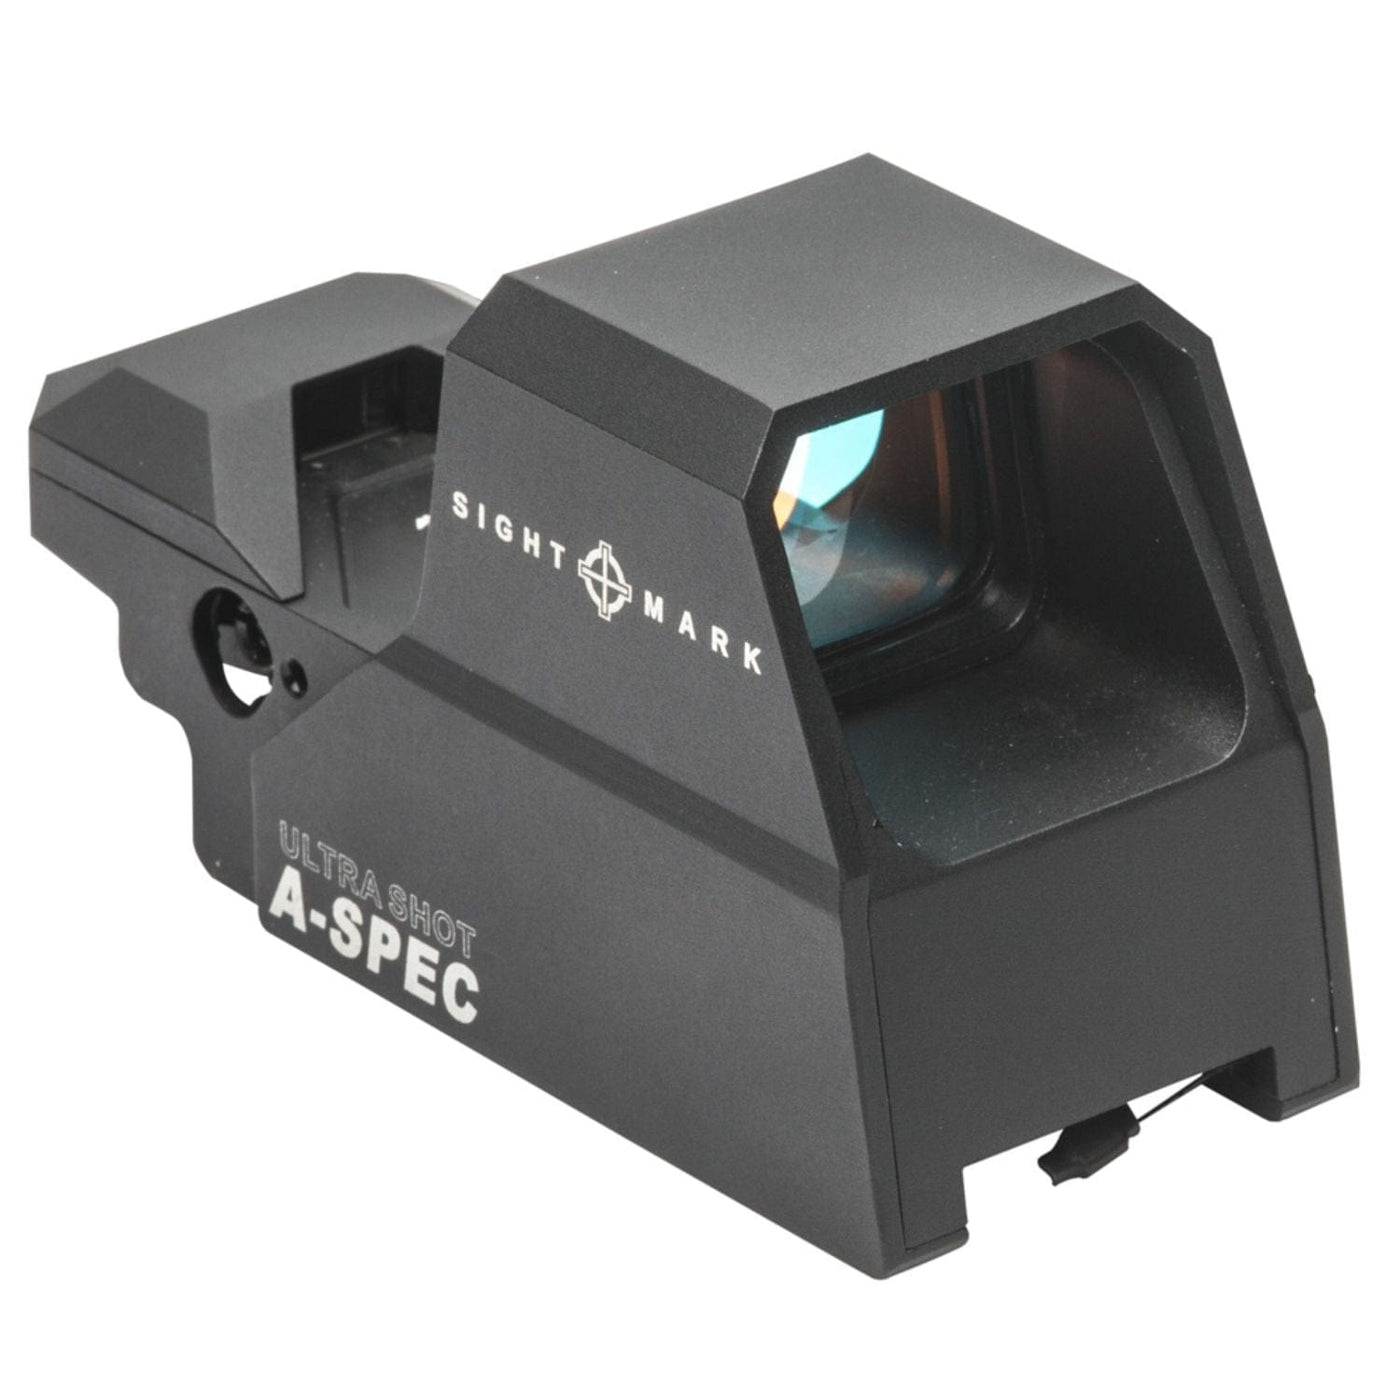 Sightmark Sightmark Ultra Shot A-Spec Reflex Sight Optics And Sights